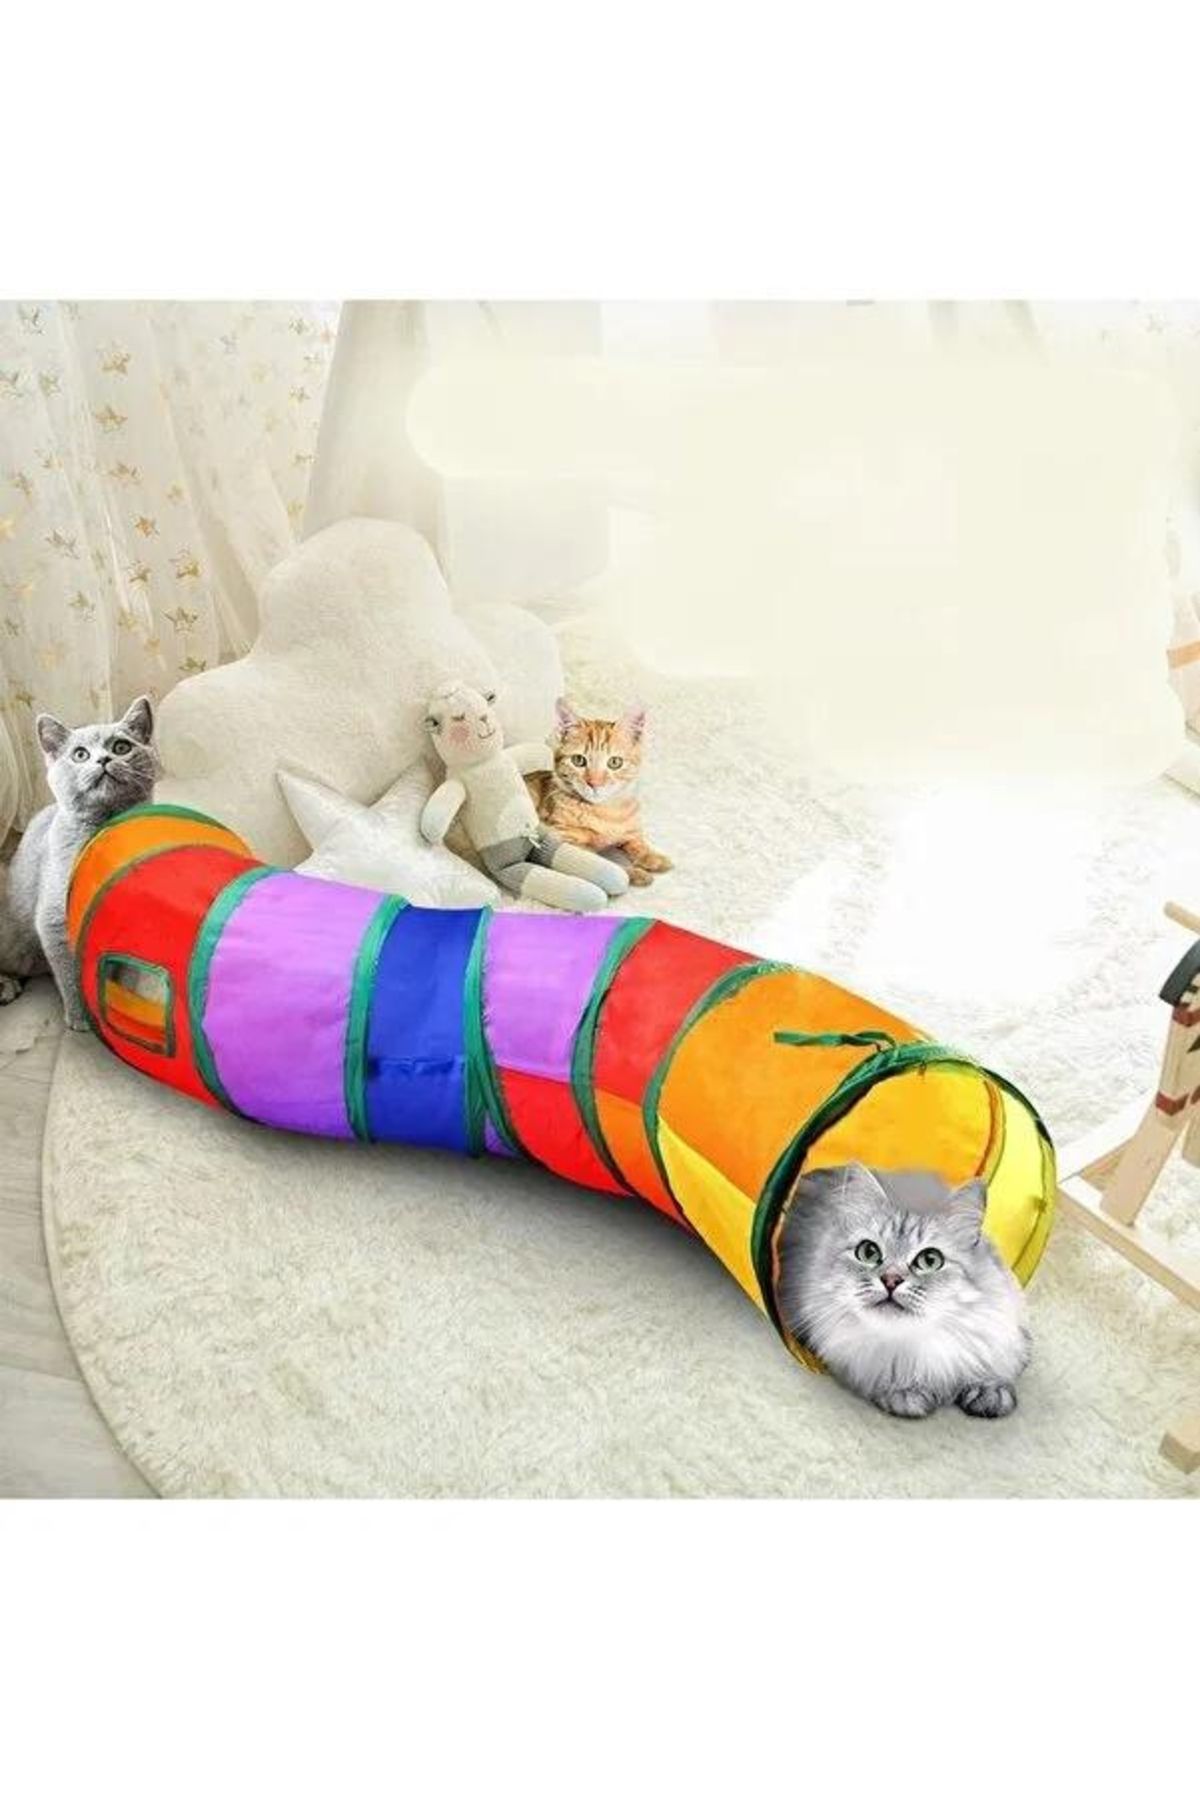 A.C.E.K PLASTİK Kıvrımlı Kedi Tüneli Katlanır Gökkuşağı S Kıvrımlı Kedi Köpek Oyun Tüneli Evcil Hayvan Oyun Tüneli